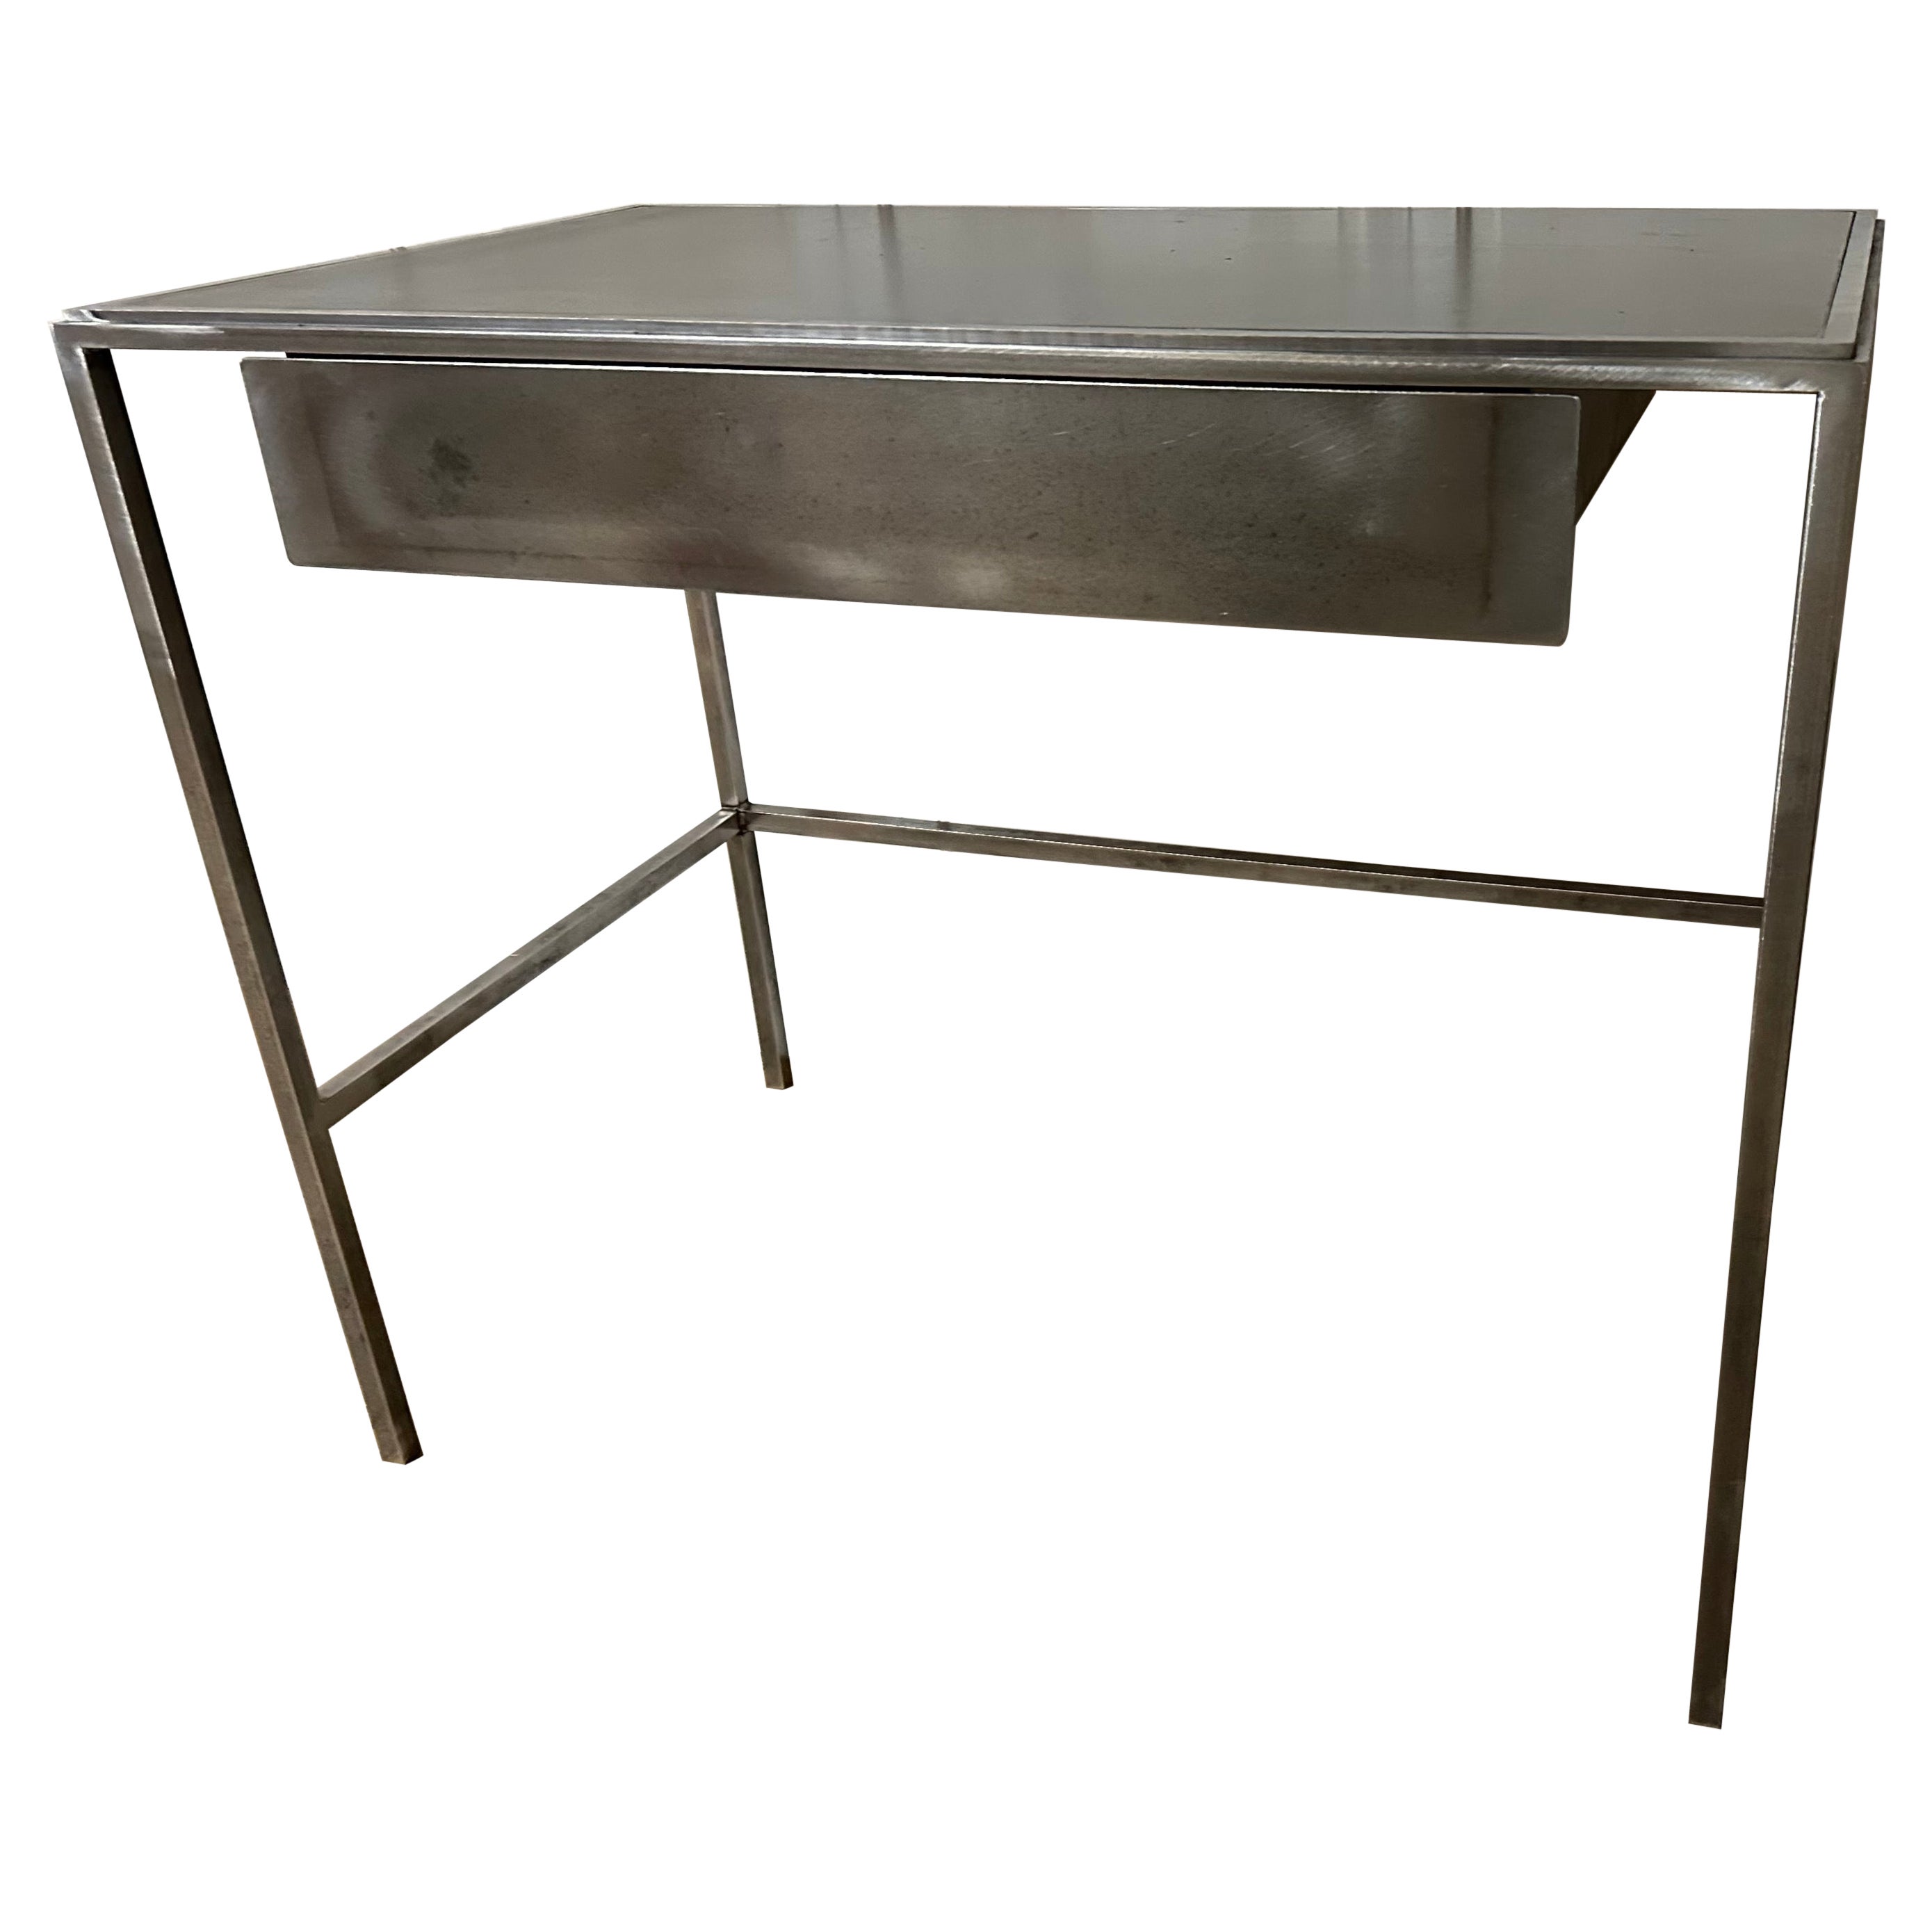 CUSTOM MADE Waschtisch oder Schreibtisch aus Metall von BH&A